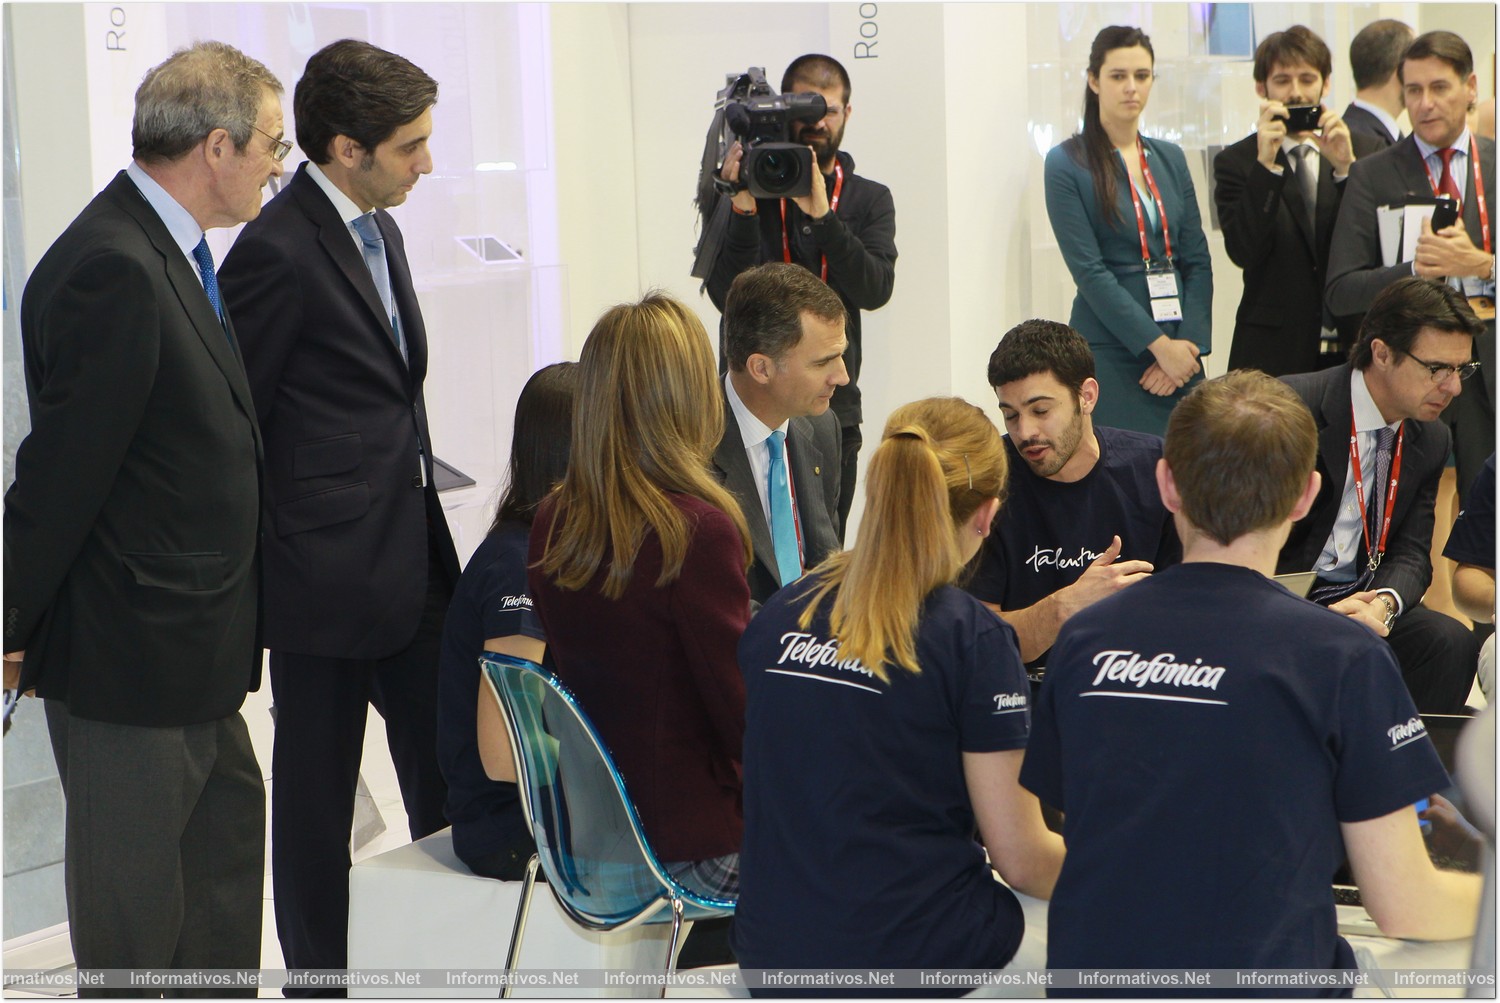 BCN25FEB014.- Mobile World Congress Barcelona. El príncipe Felipe acompañado de la princesa Letizia visitaron el espacio de una empresa de telefonía española.